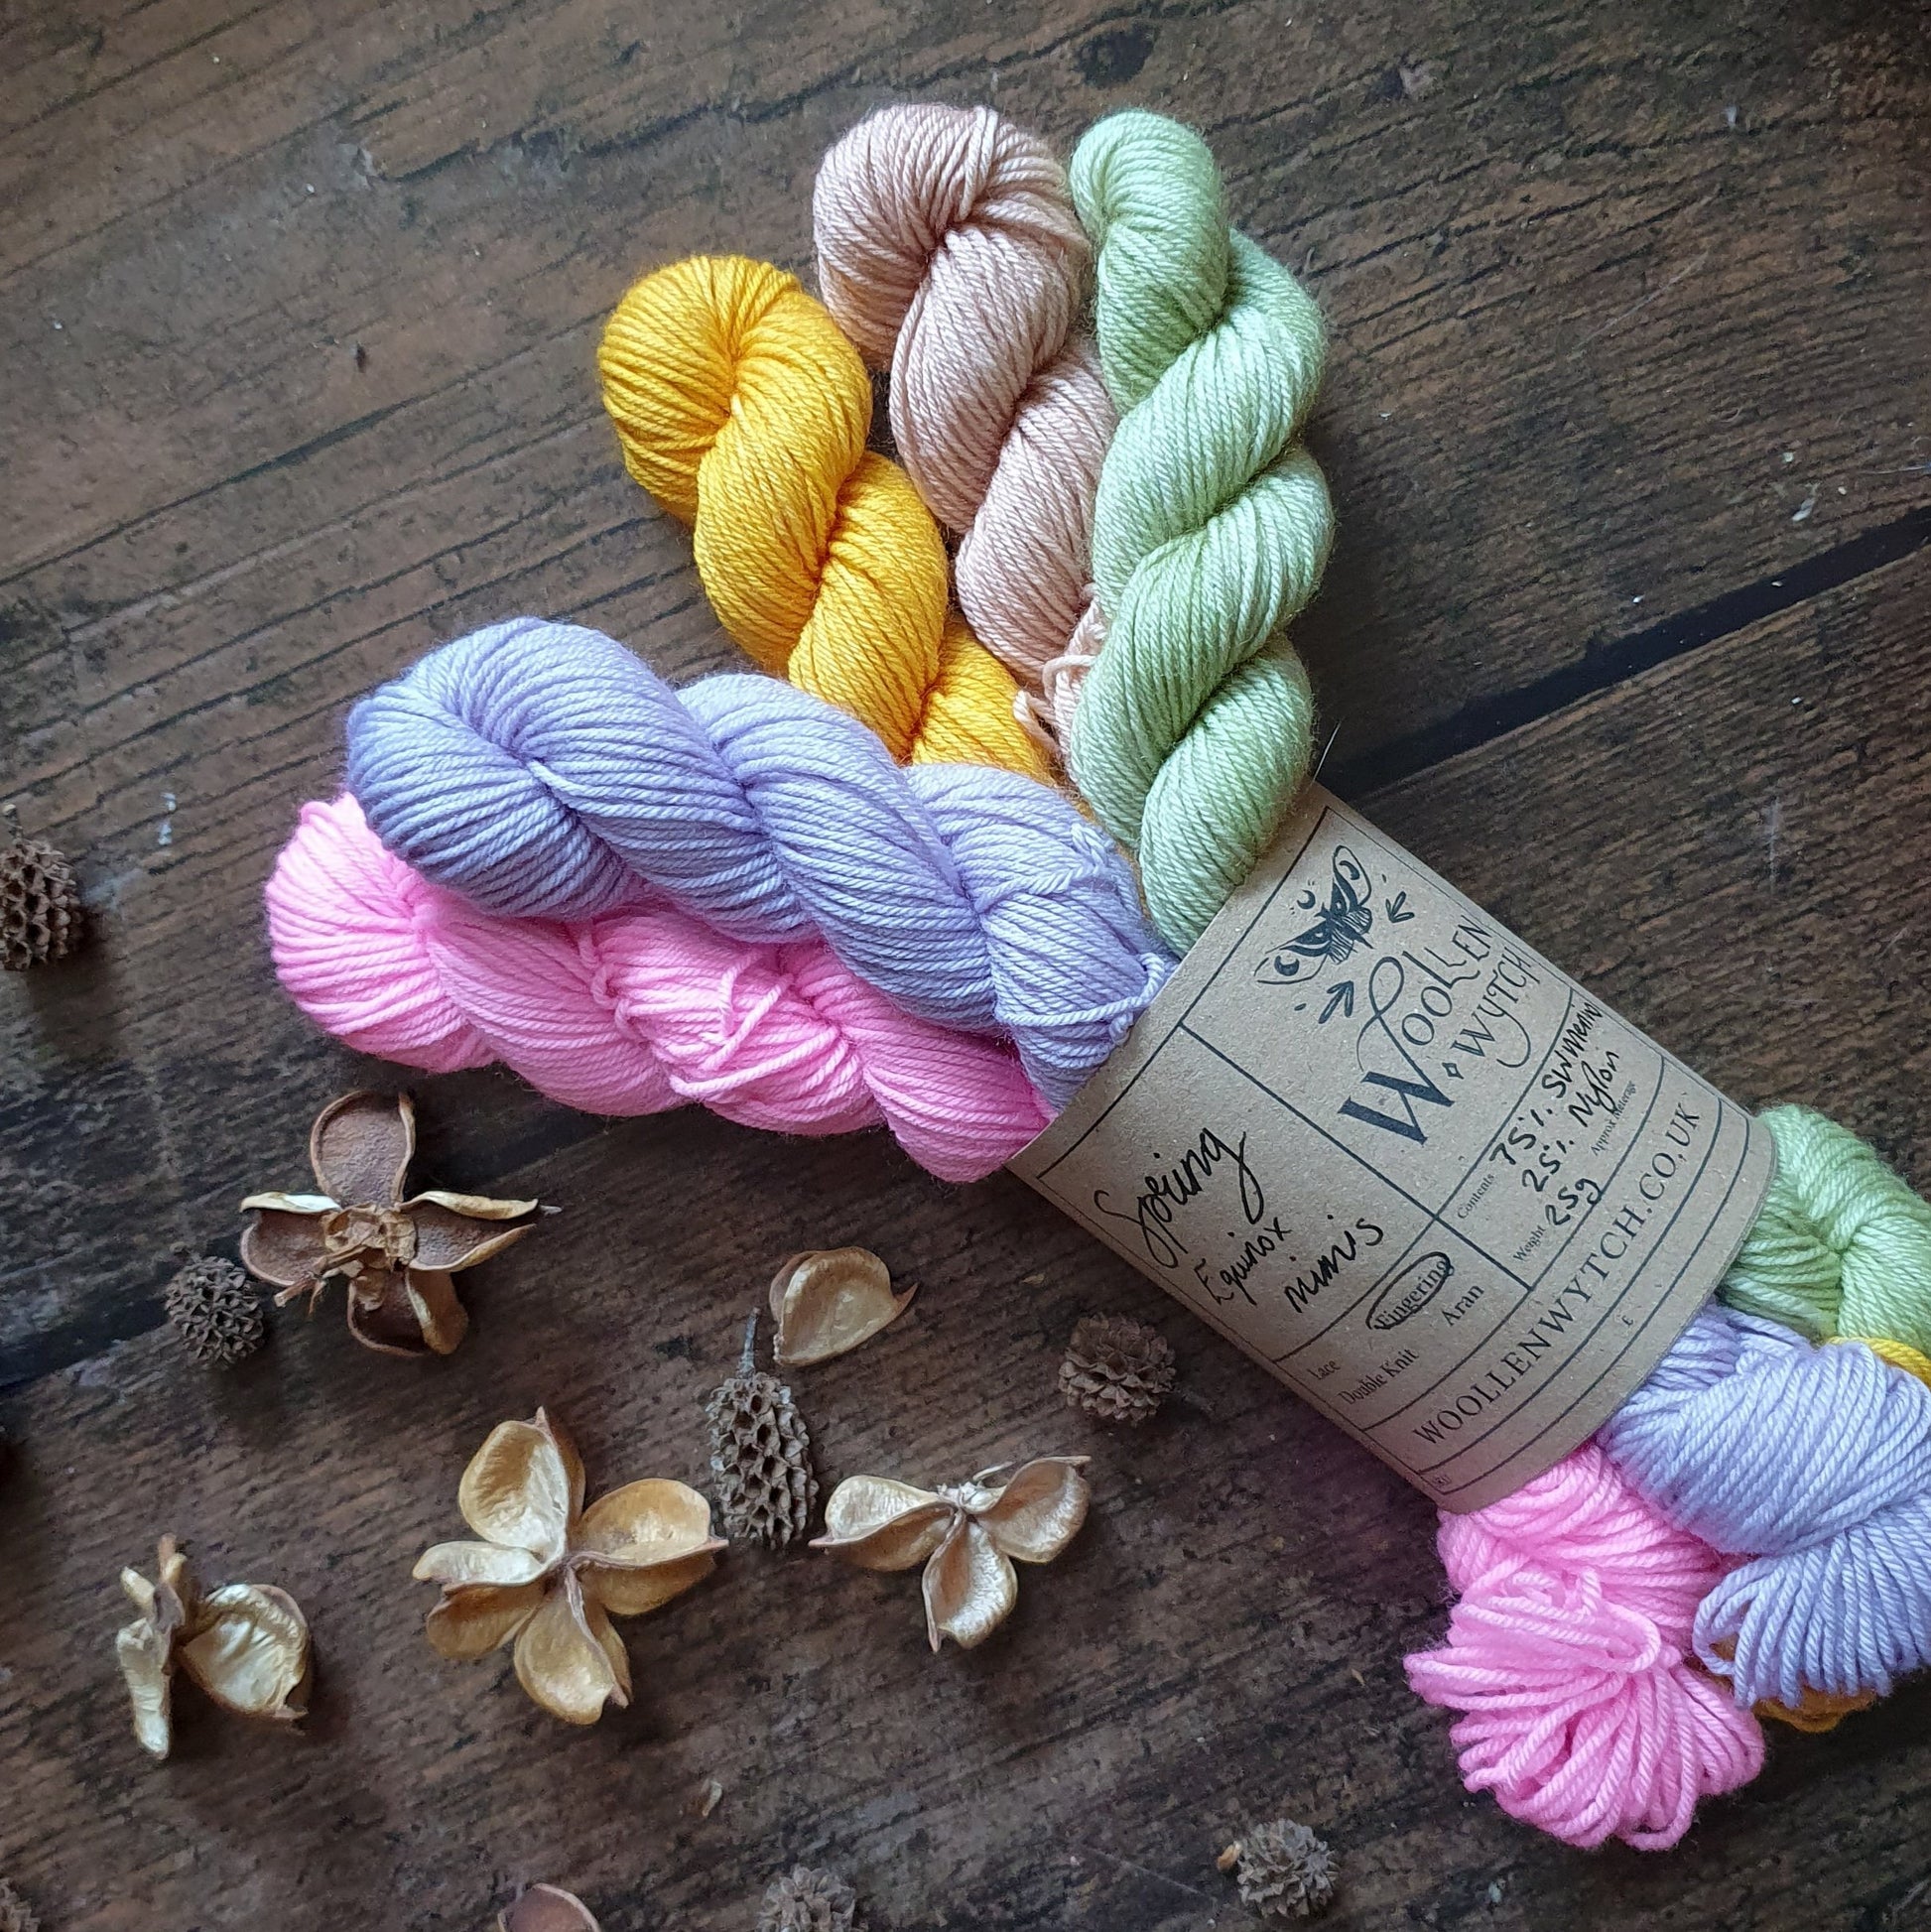 Spring Equinox - Mini Skein Bundle Yarn Woollen Wytch 